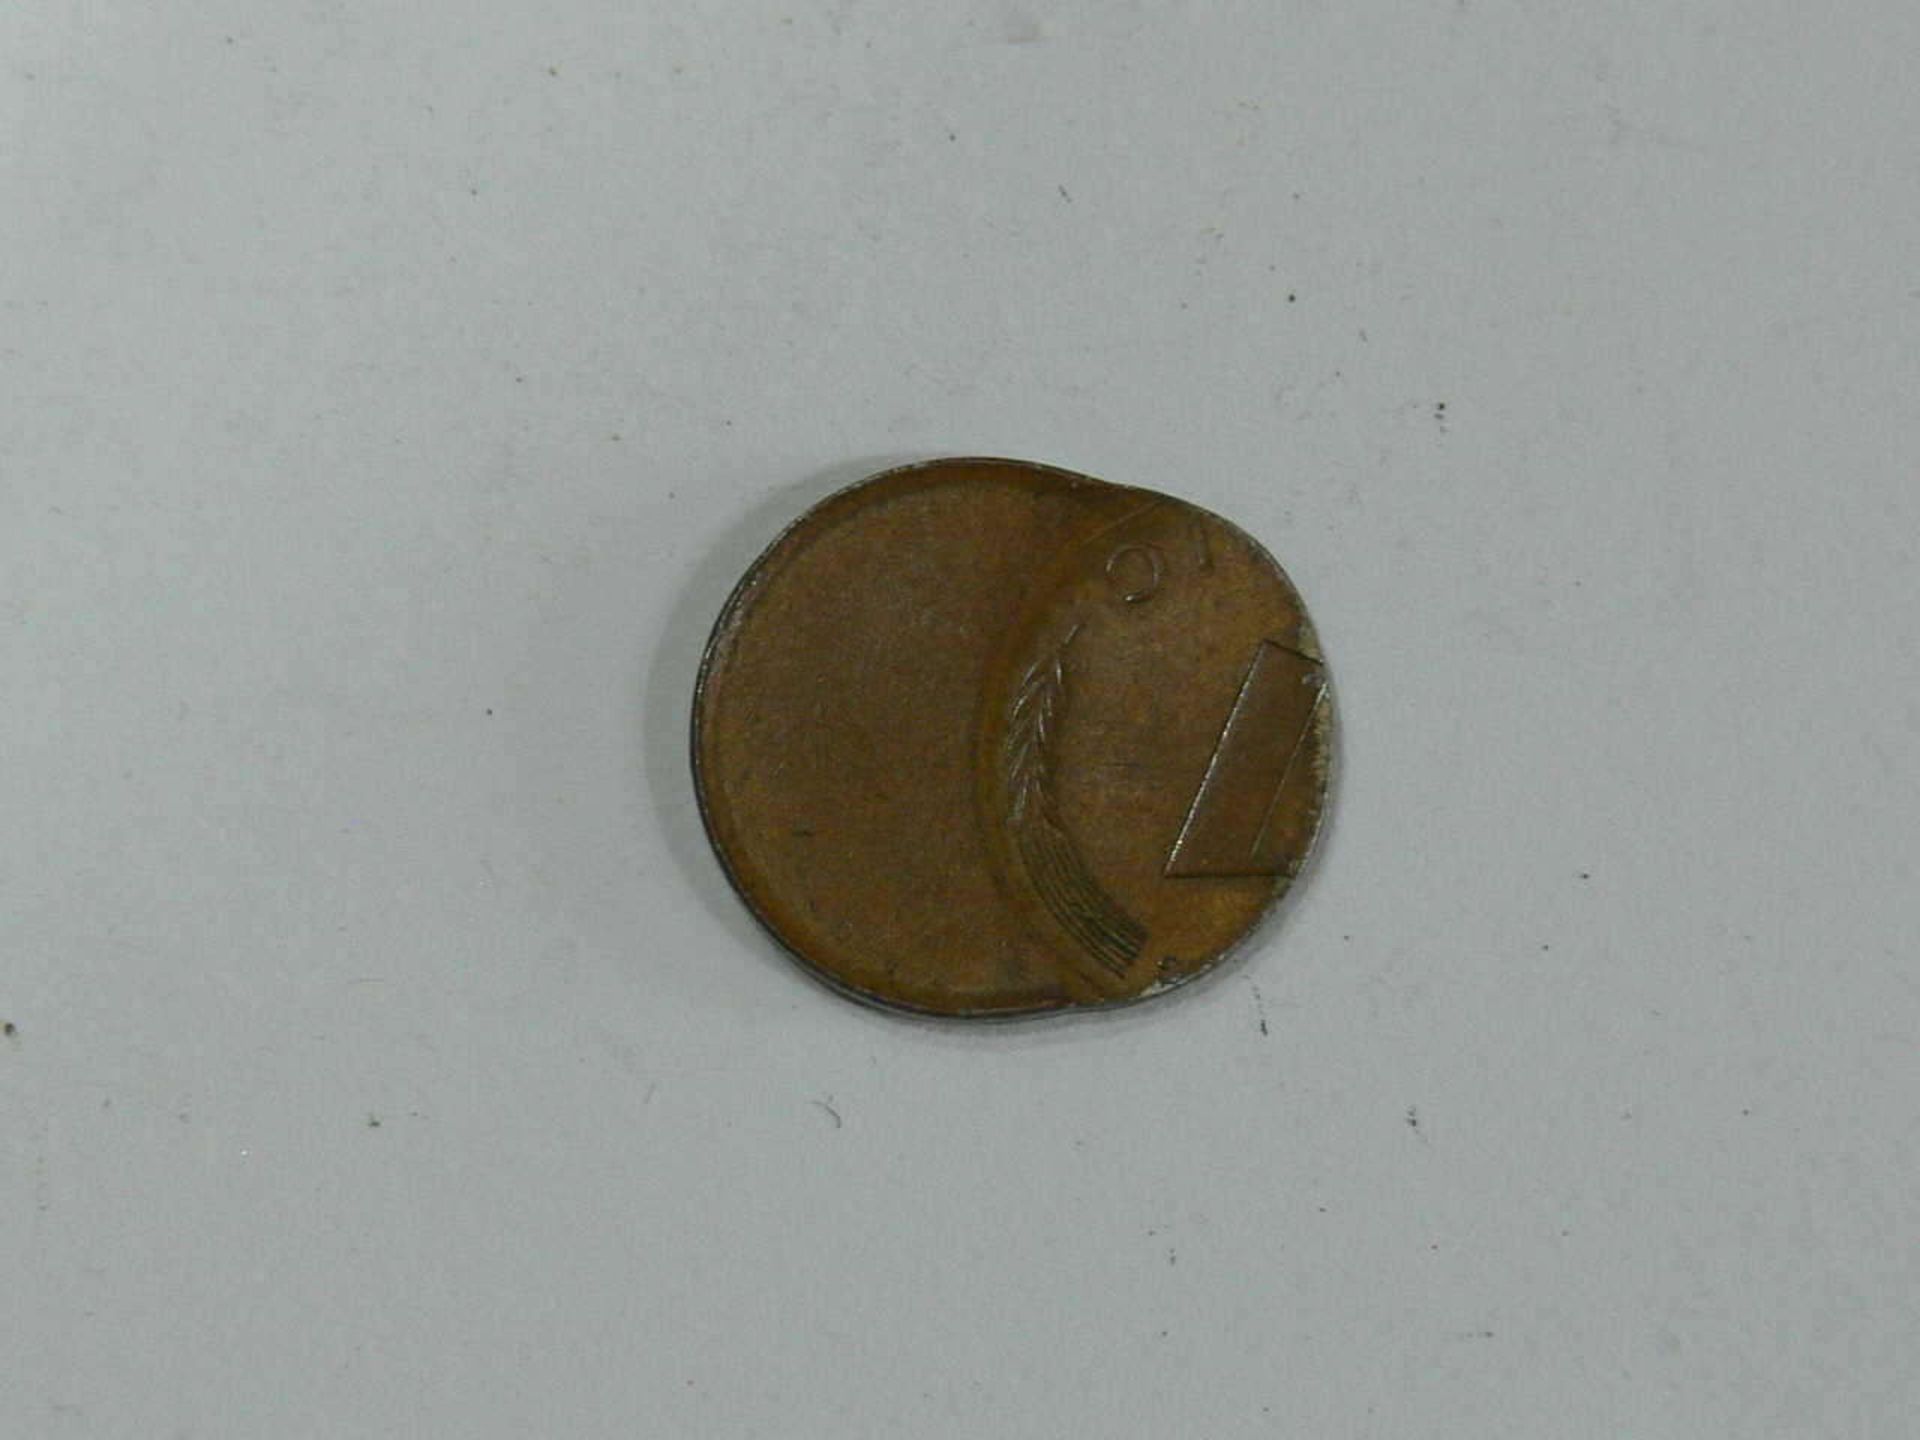 BRD, 1 Pfennig - Münze, Fehlprägung, dezentriert. BRD, 1 Pfennig coin, misprinted, decentered.